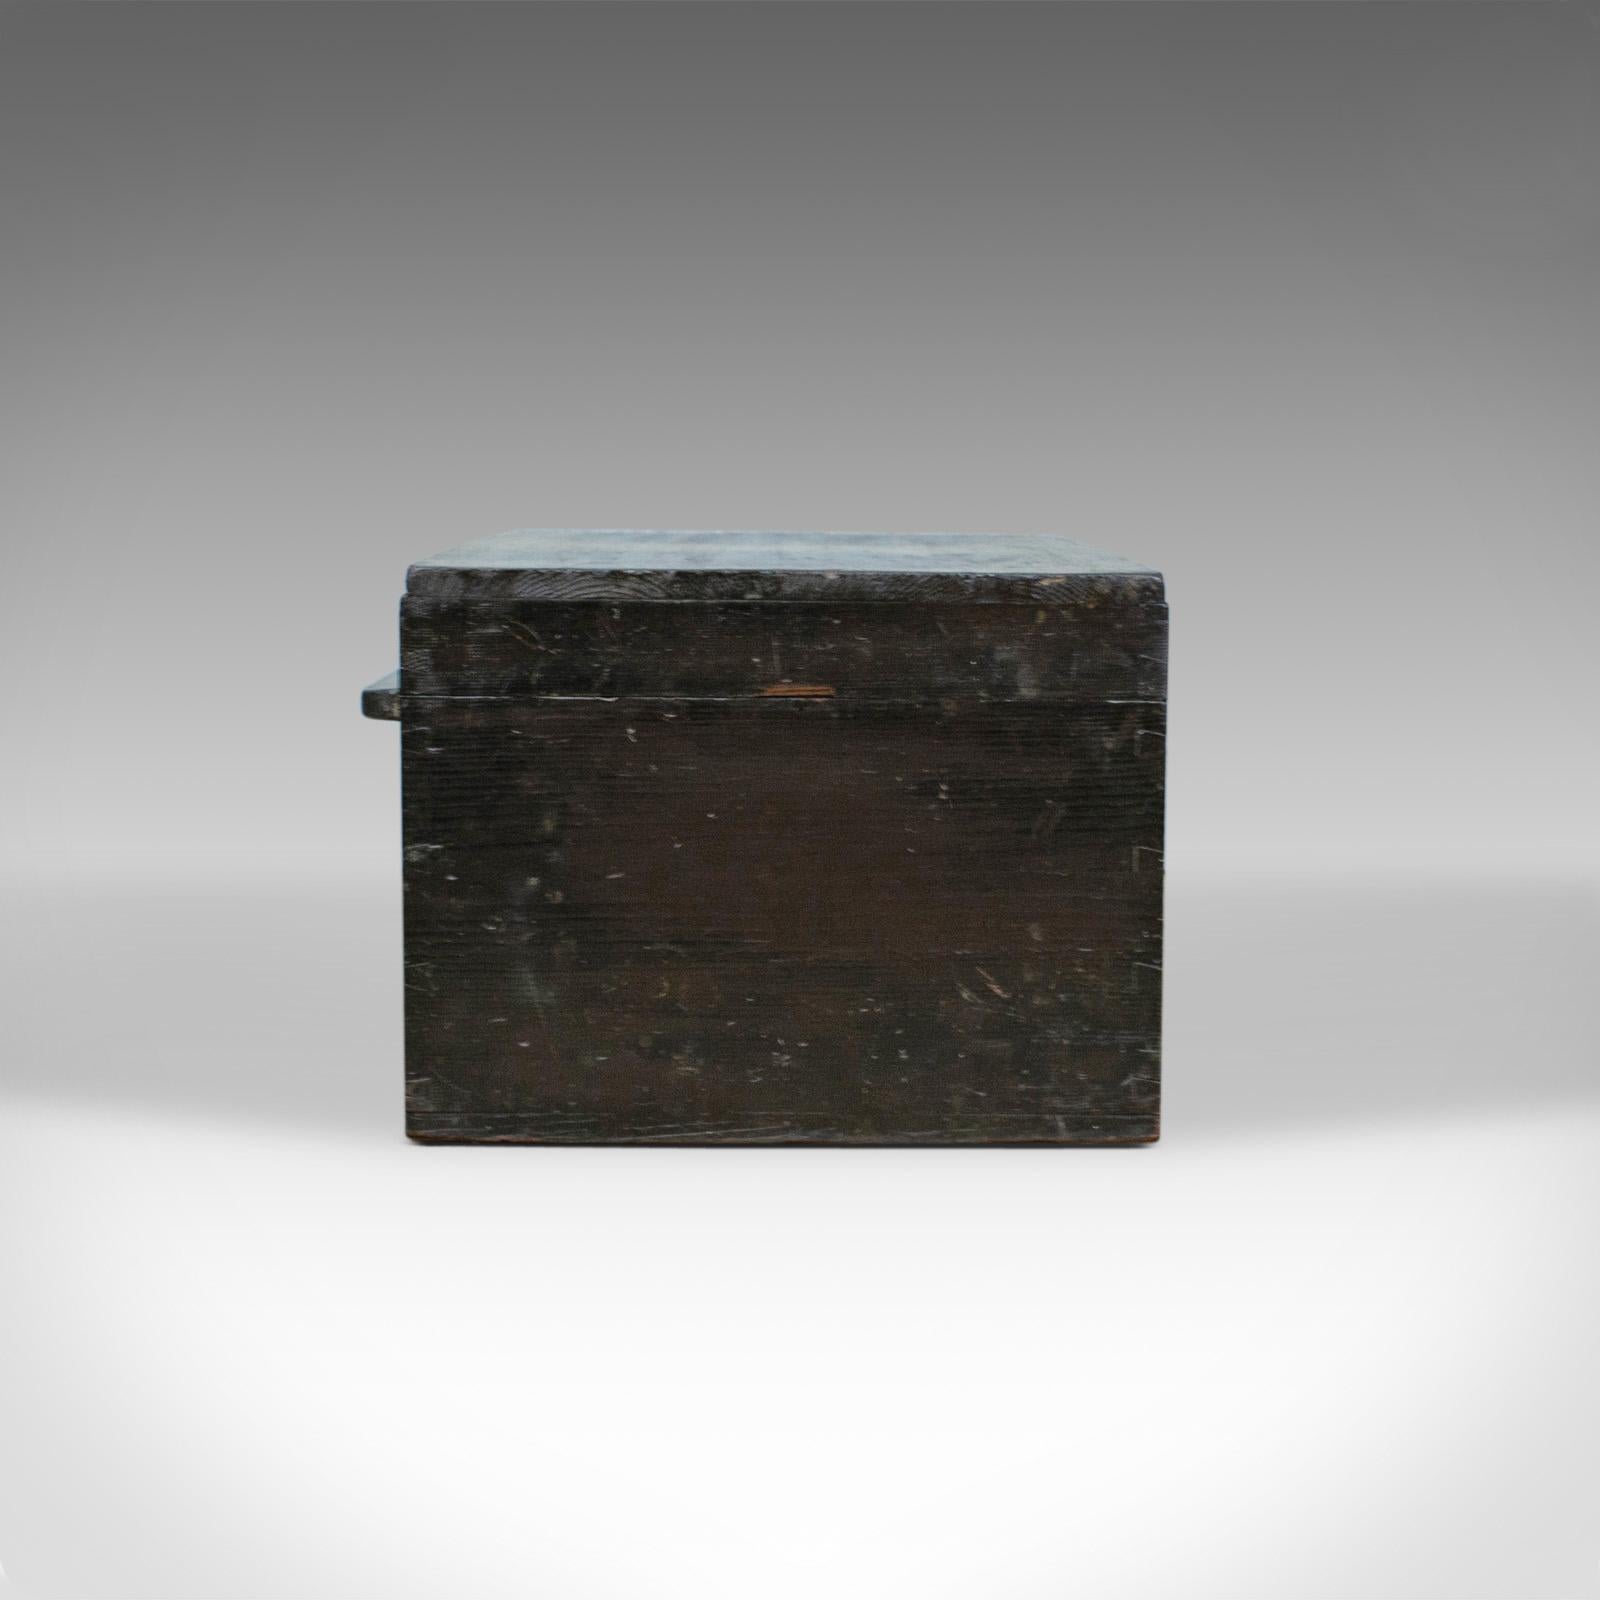 shipwright's chest